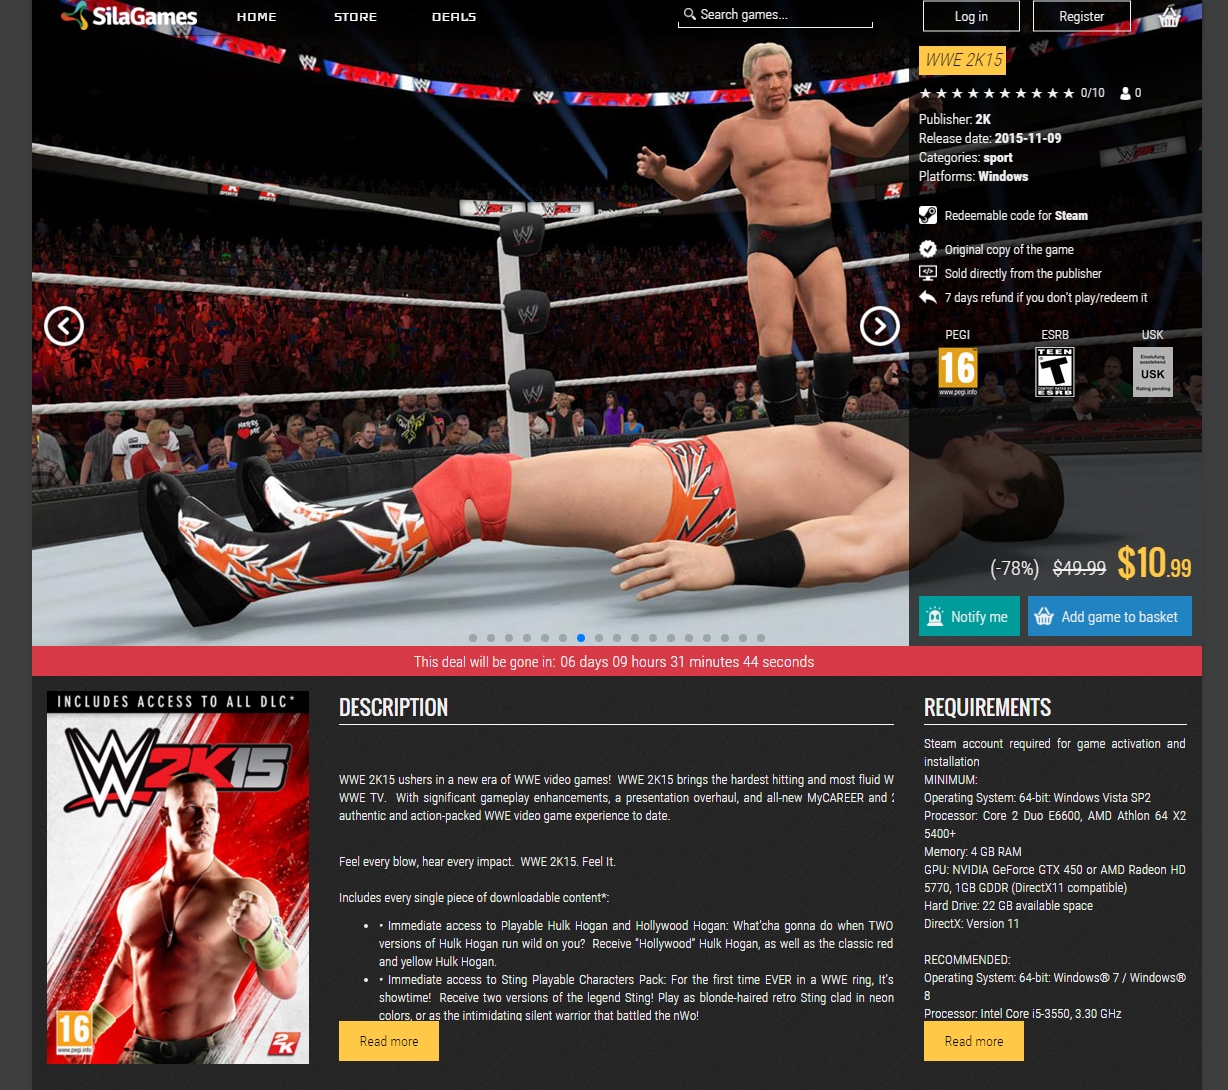 'WWE 2K15' - www_silagames_com_game_1464_wwe-2k15 - 341.jpg